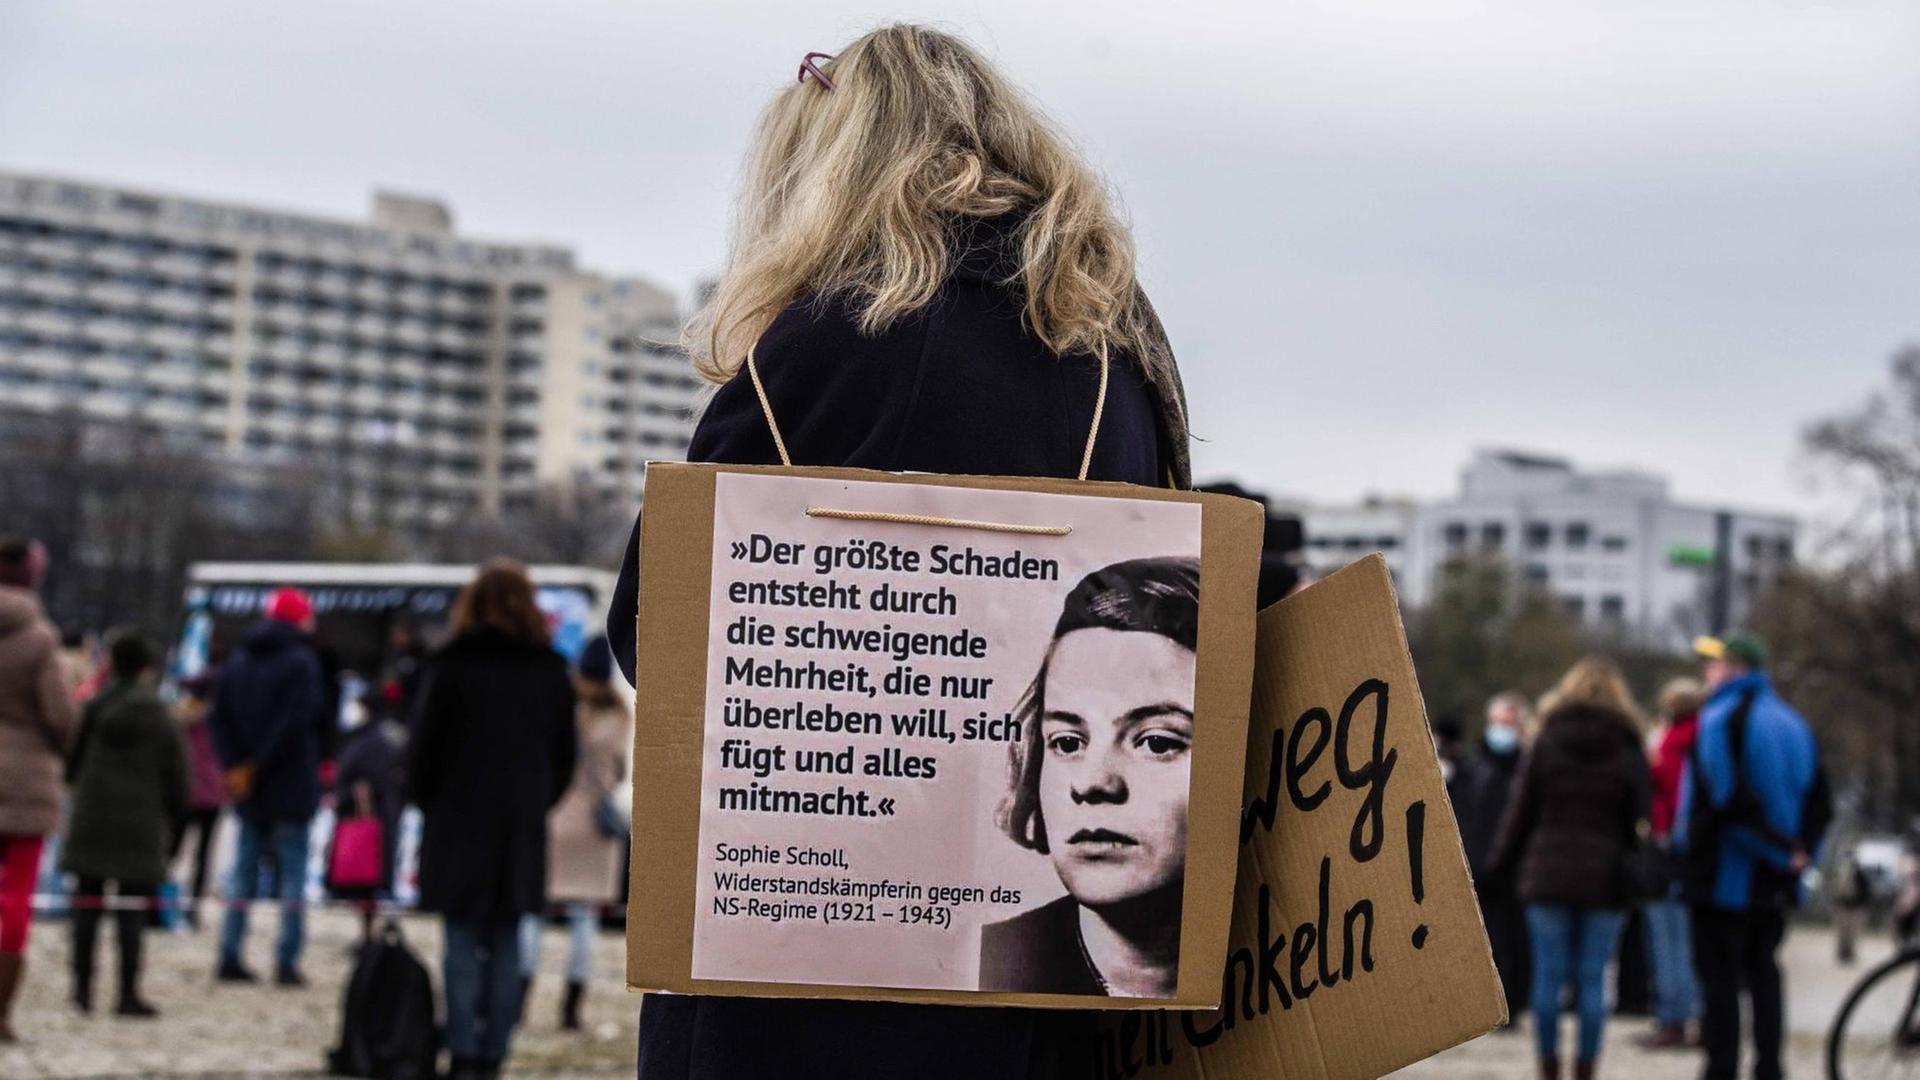 Rückansicht einer Frau auf einer Demo. Sie trägt um den Hals ein Schild mit dem Foto von Sophie Scholl, auf dem das Scholl zugeschrieben Zitat steht: "Der größte Schaden entsteht durch die schweigende Mehrheit, die nur überleben will, sich fügt und alles mitmacht."